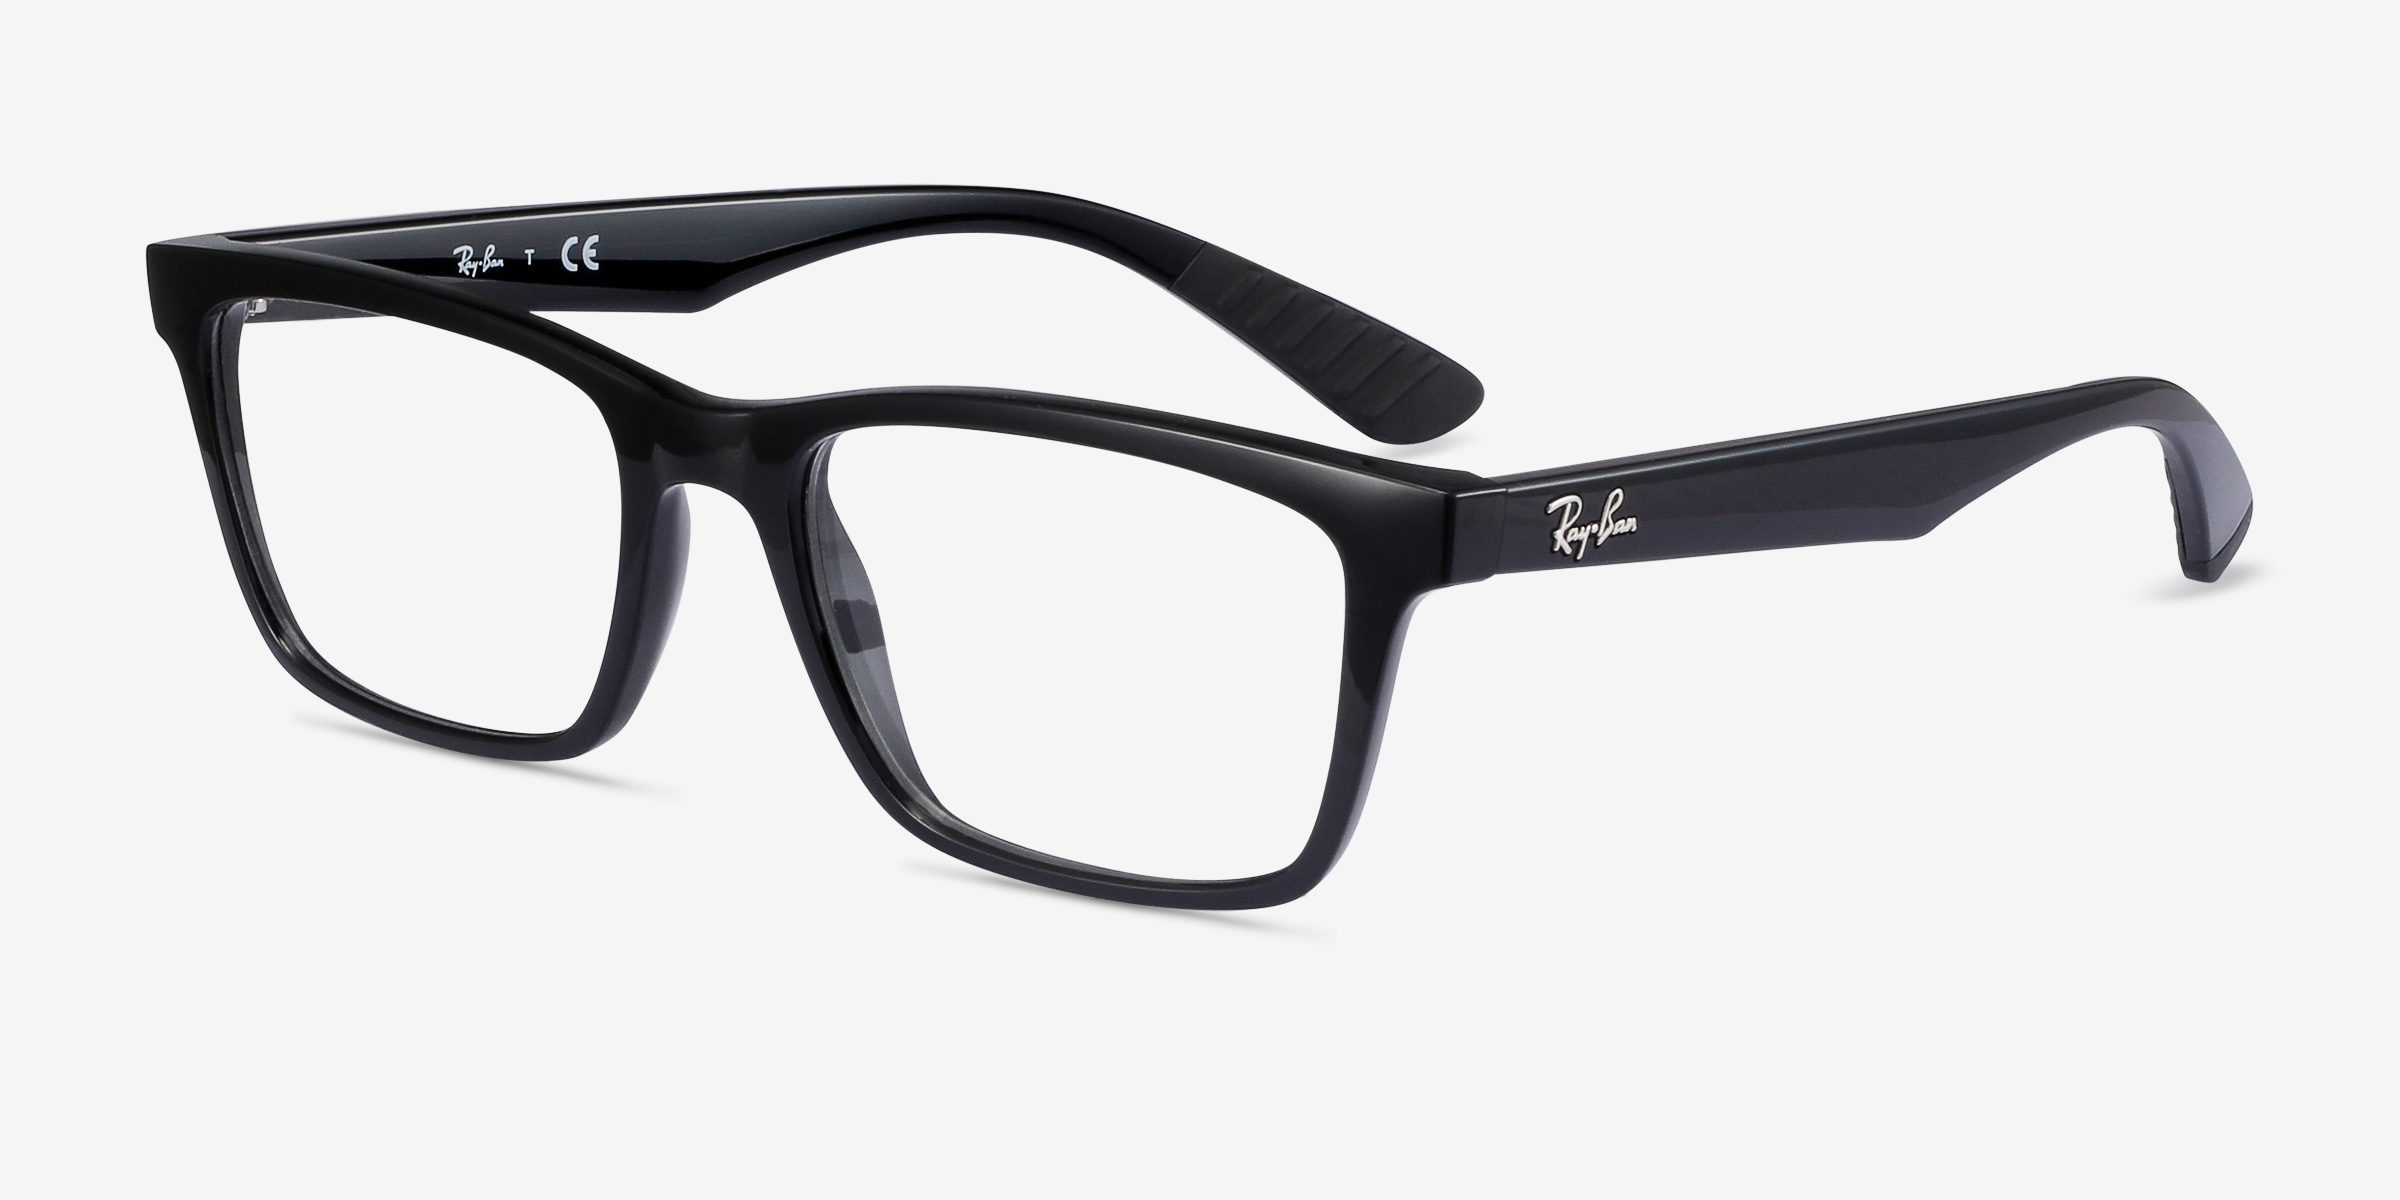 Ray Ban Rb7025 Rectangle Shiny Black Frame Eyeglasses Eyebuydirect